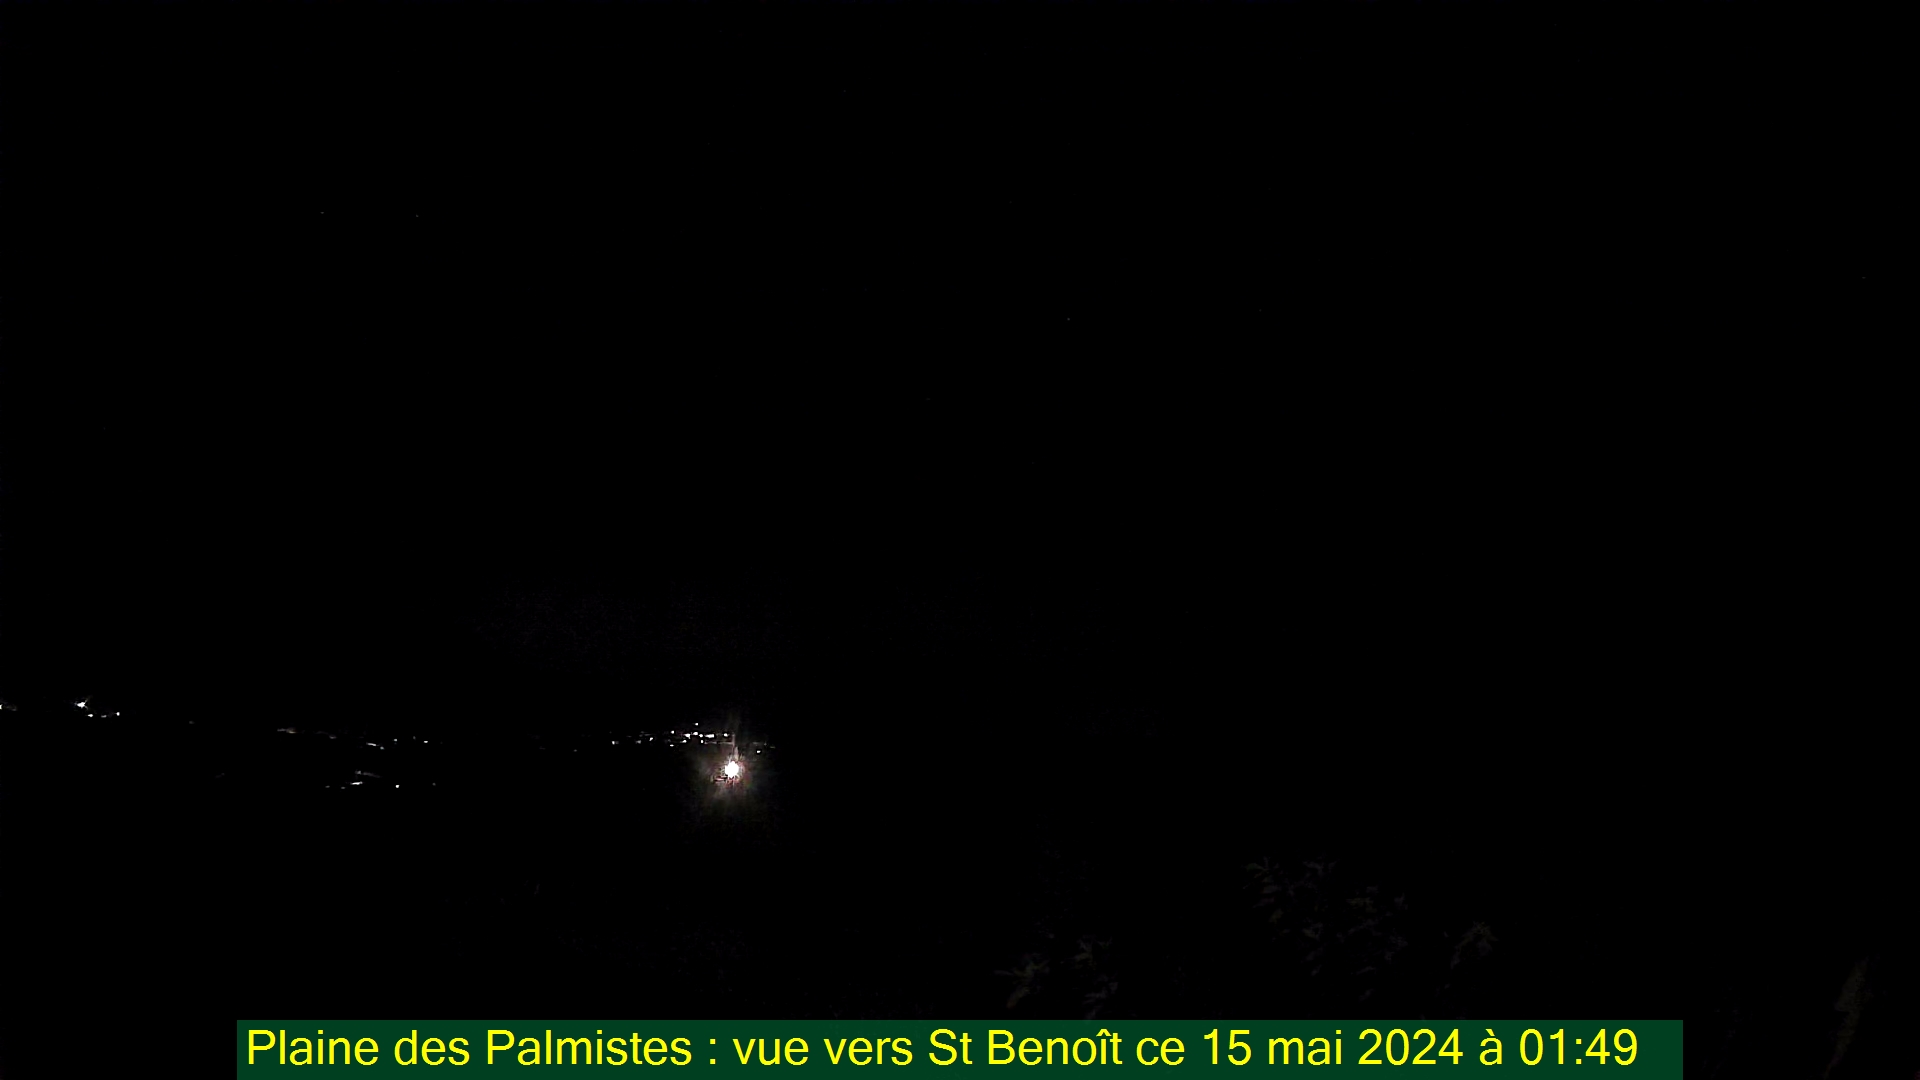 Saint-Denis (Réunion) Søn. 01:50